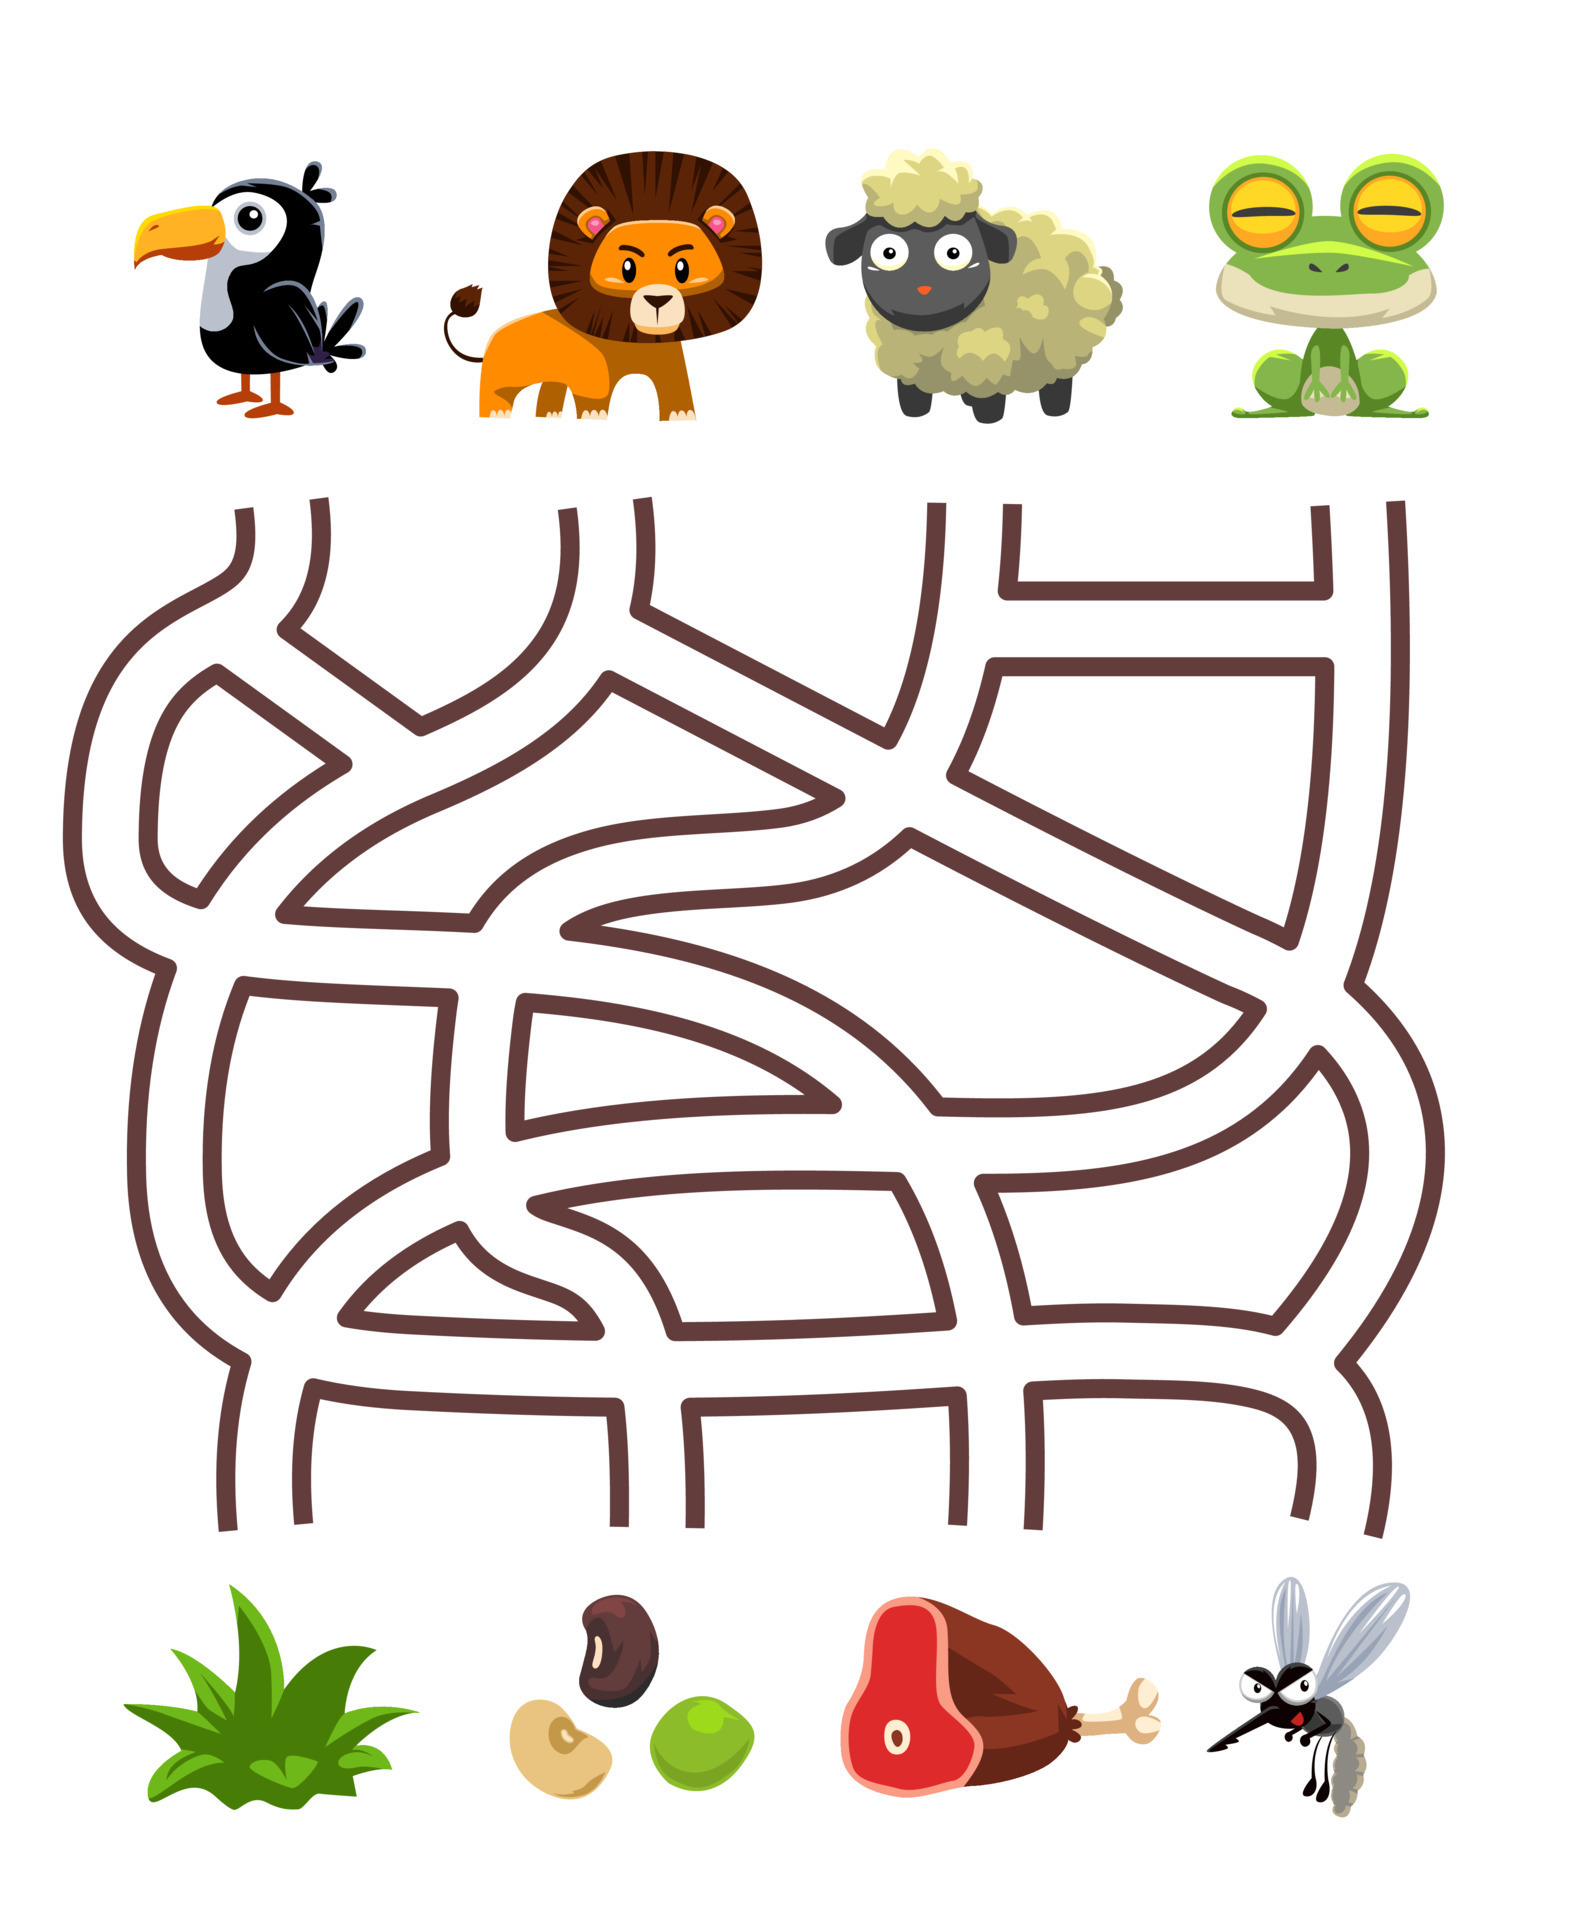 jogo de quebra-cabeça de labirinto para crianças par de sapo de ovelha leão  tucano bonito dos desenhos animados com a planilha imprimível de comida  correta 11208250 Vetor no Vecteezy